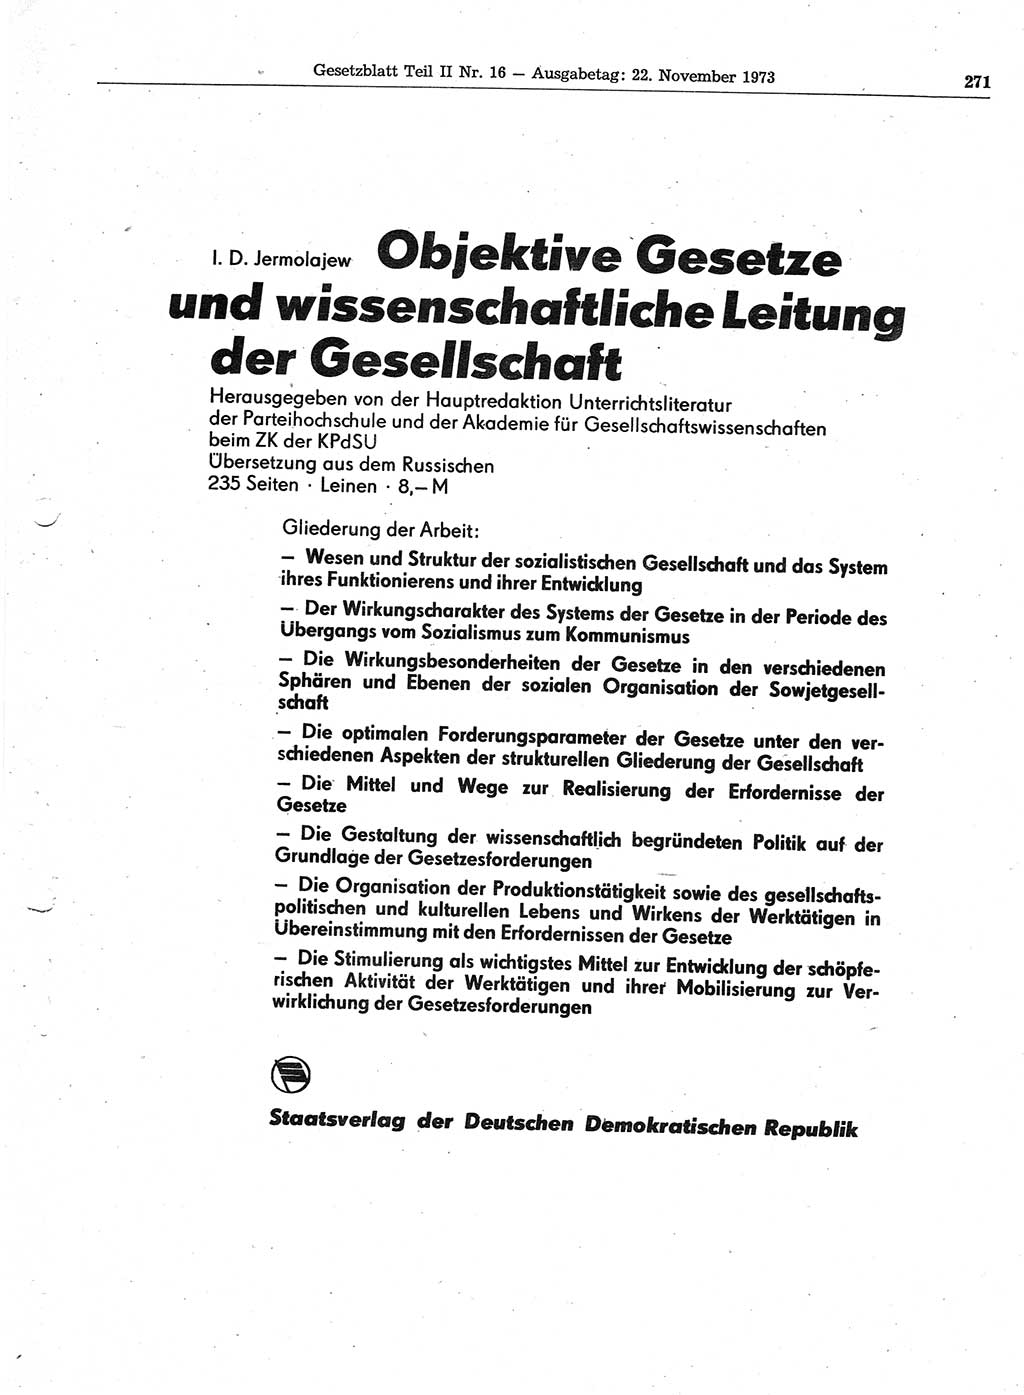 Gesetzblatt (GBl.) der Deutschen Demokratischen Republik (DDR) Teil ⅠⅠ 1973, Seite 271 (GBl. DDR ⅠⅠ 1973, S. 271)